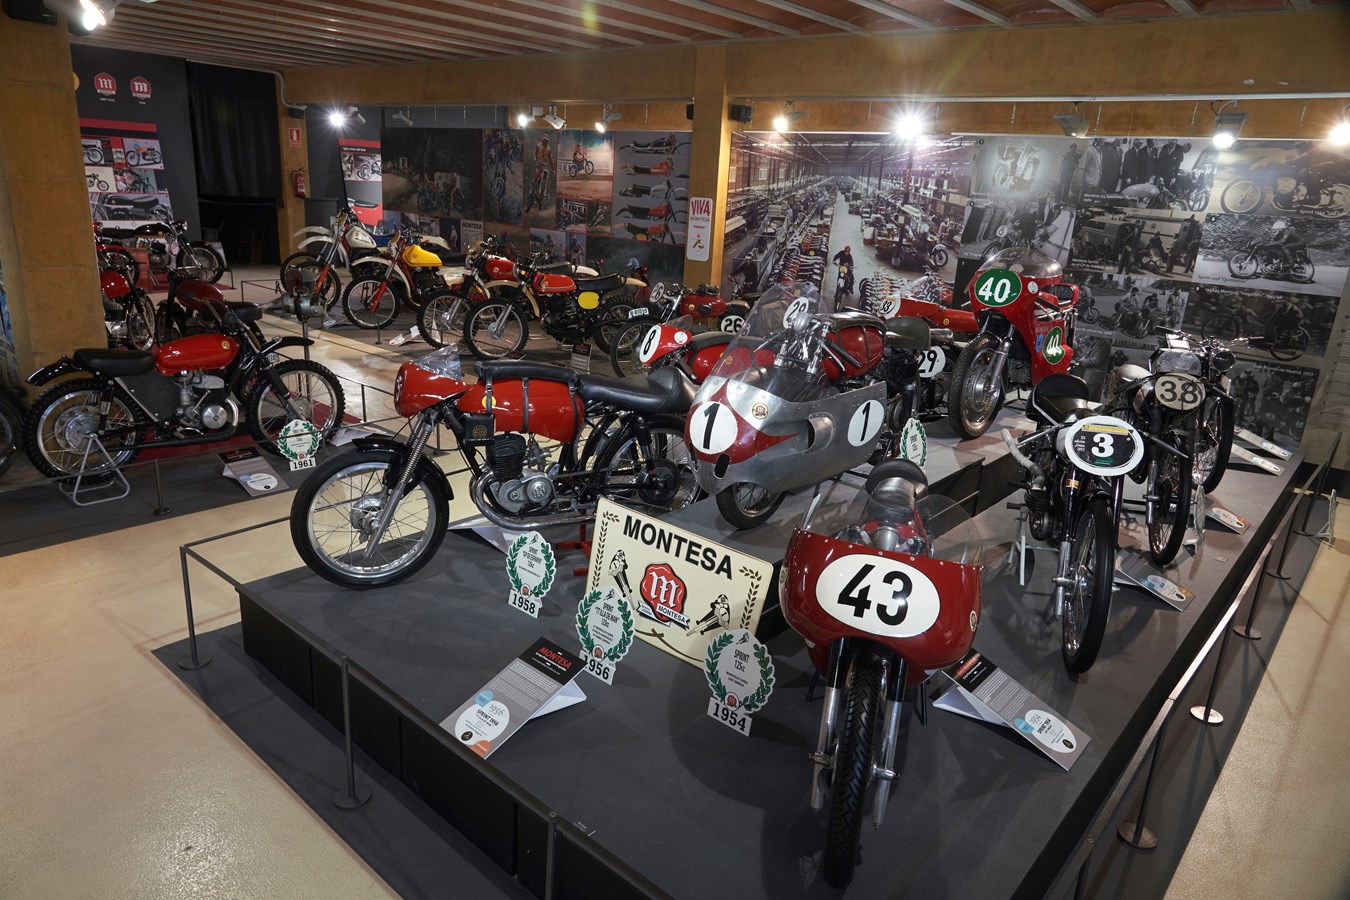 La exposición “Montesa, 75 años de una aventura irrepetible”, reabre sus puertas en el Museu de la Moto de Bassella